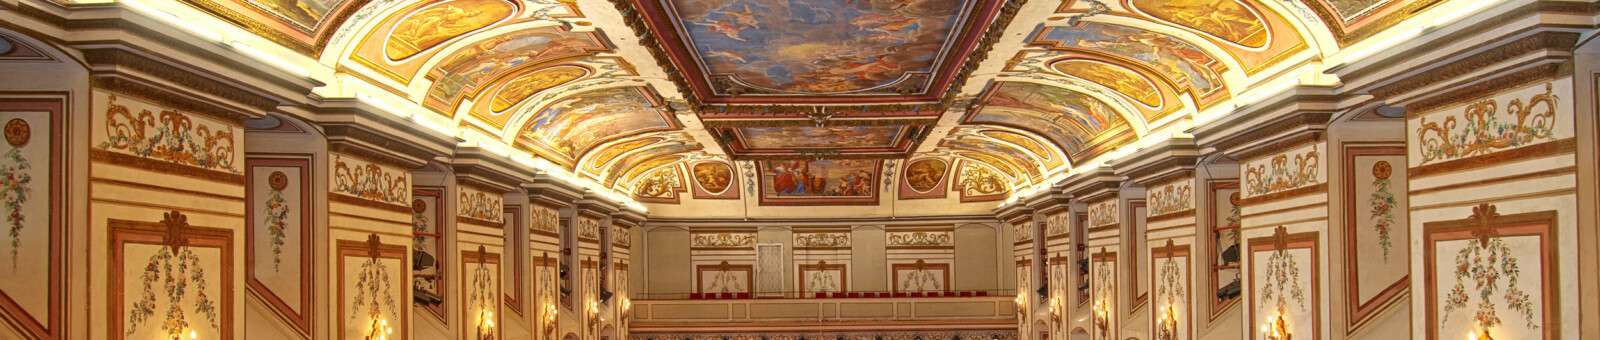     Haydnsaal at Esterhazy Palace 